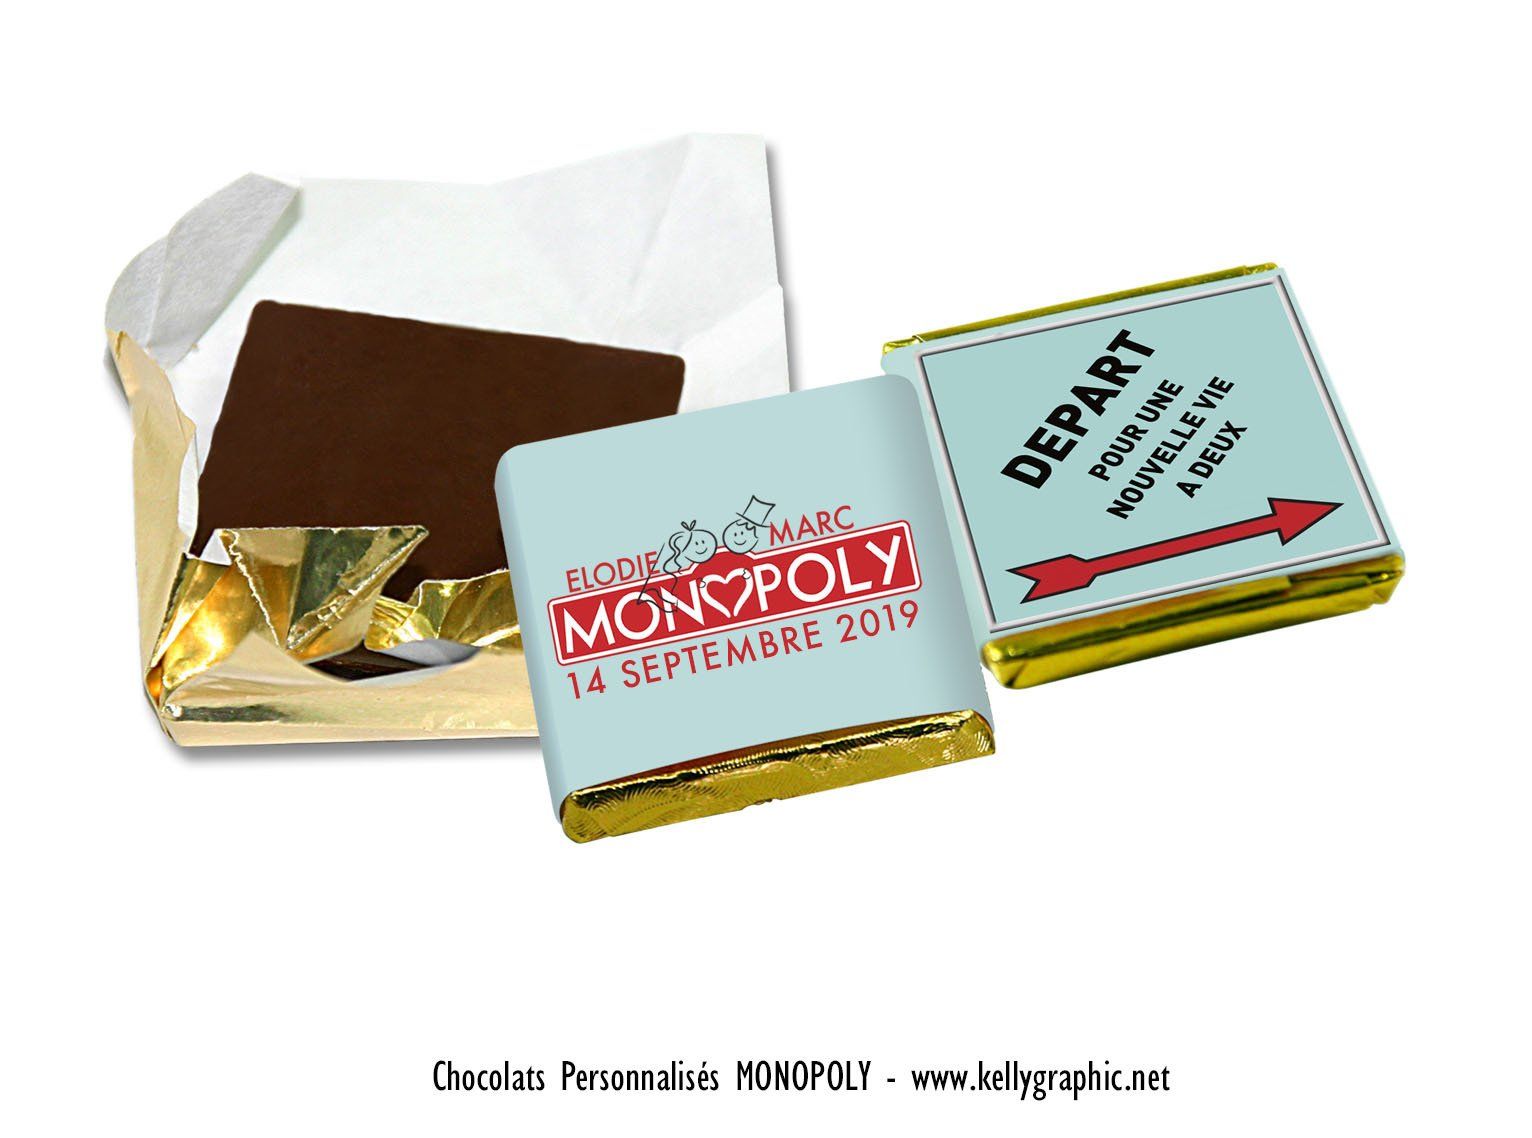 Chocolats personnalisés Mariage Monopoly